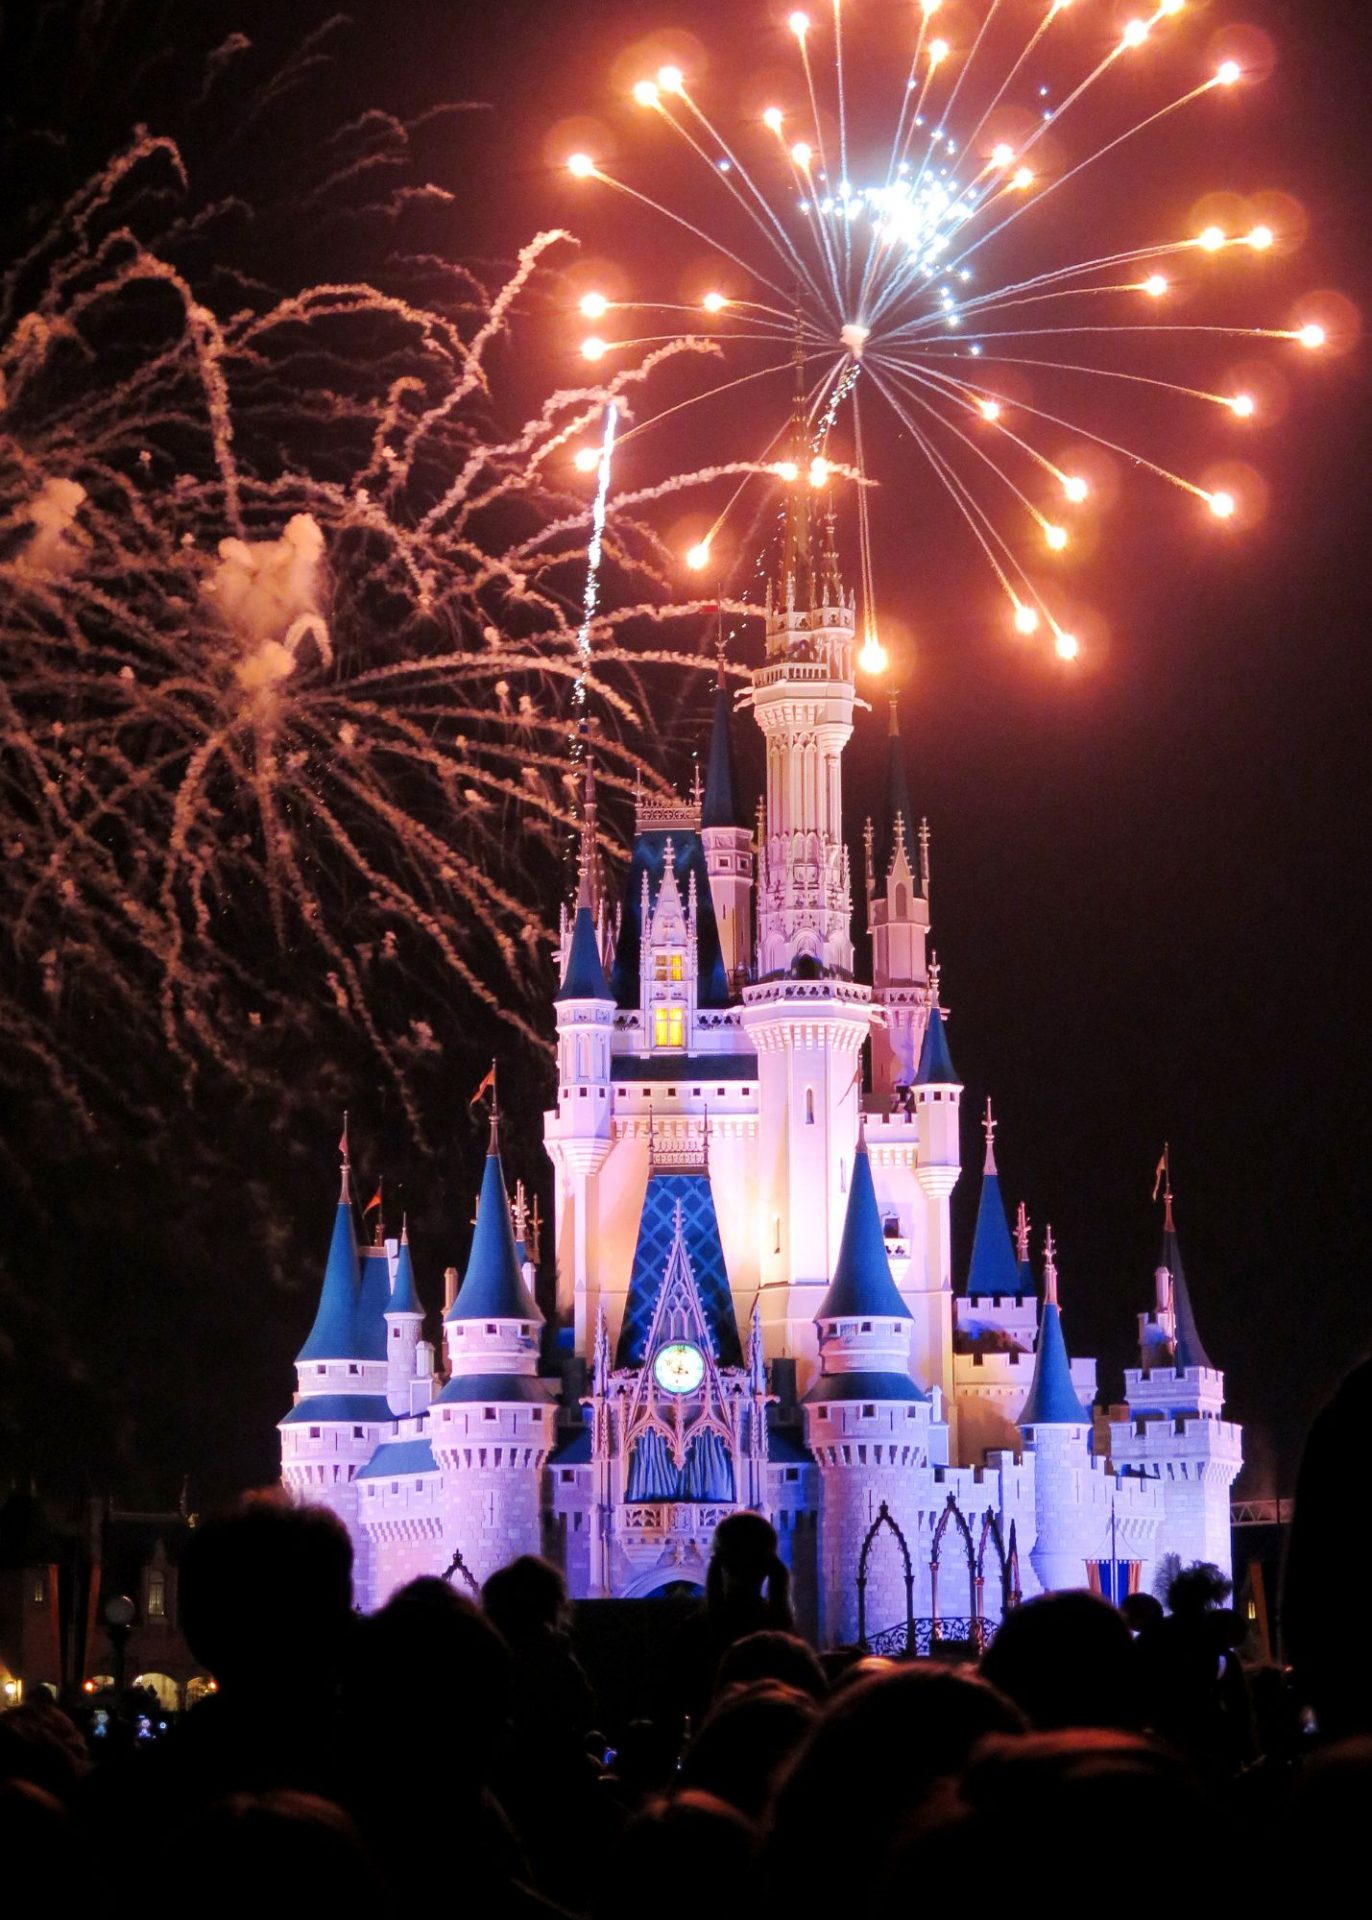 Disney's Cinderella's Castle